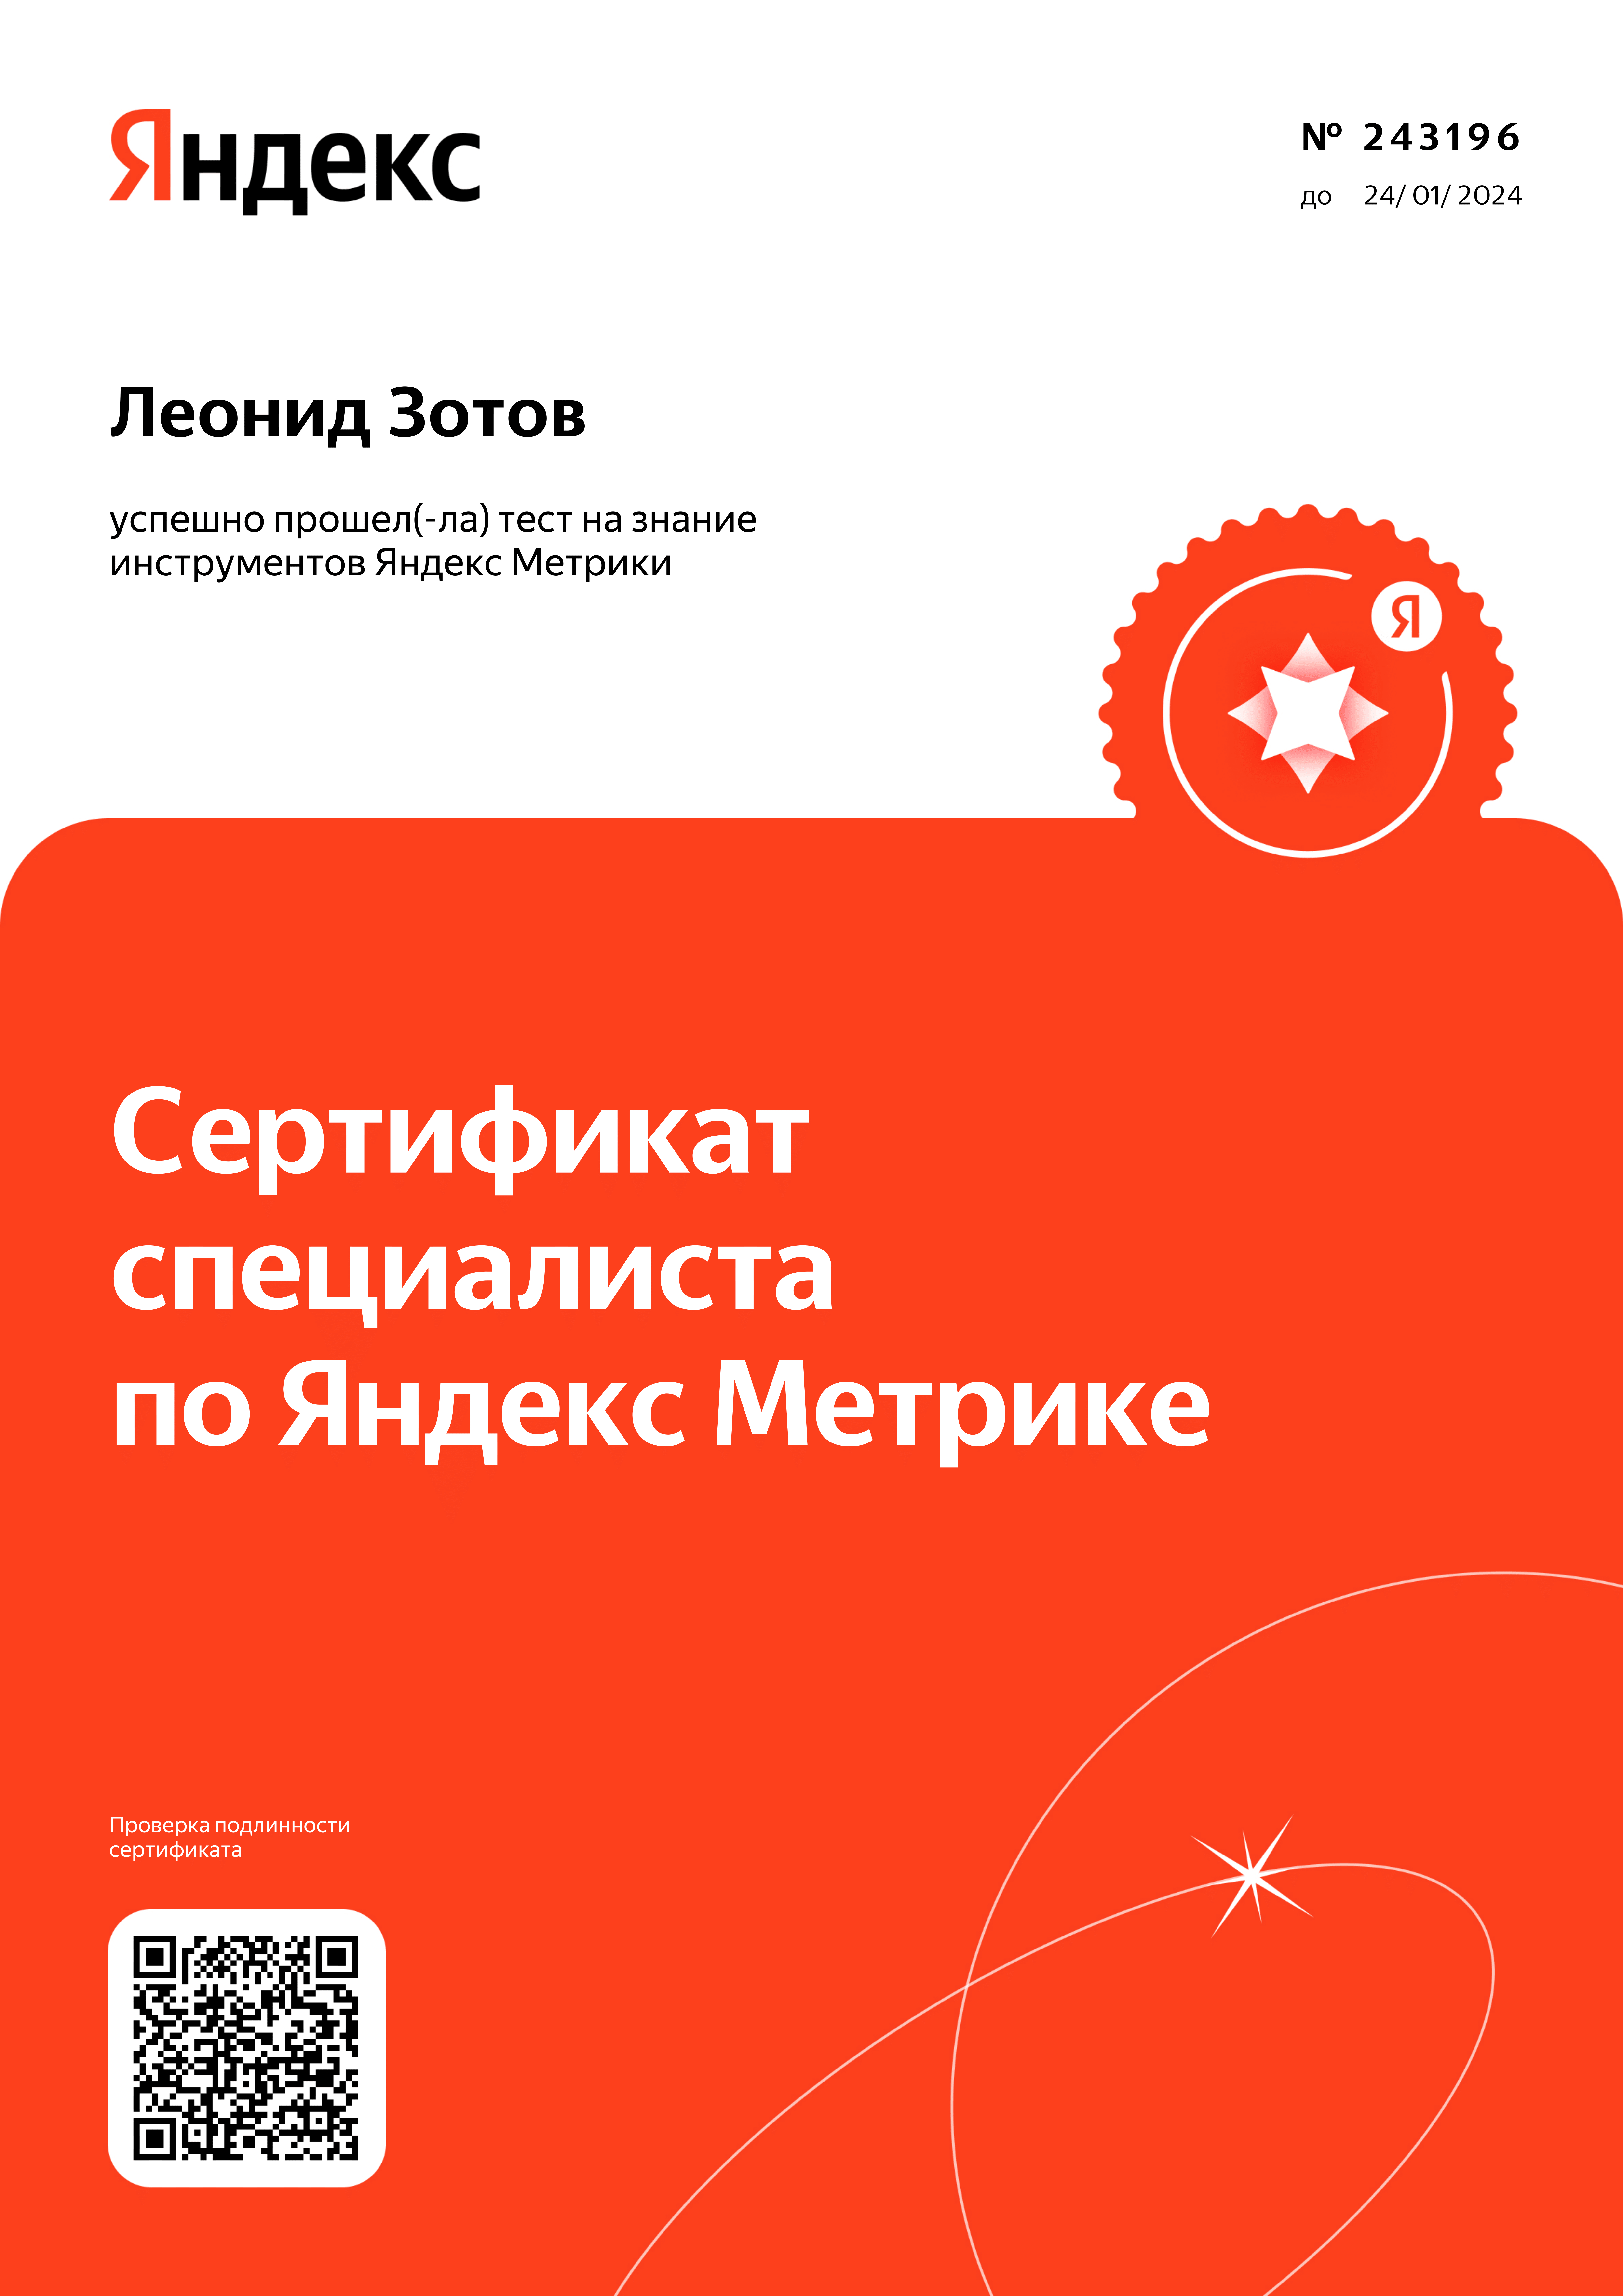 Зотов - Яндекс.Метрика 2023